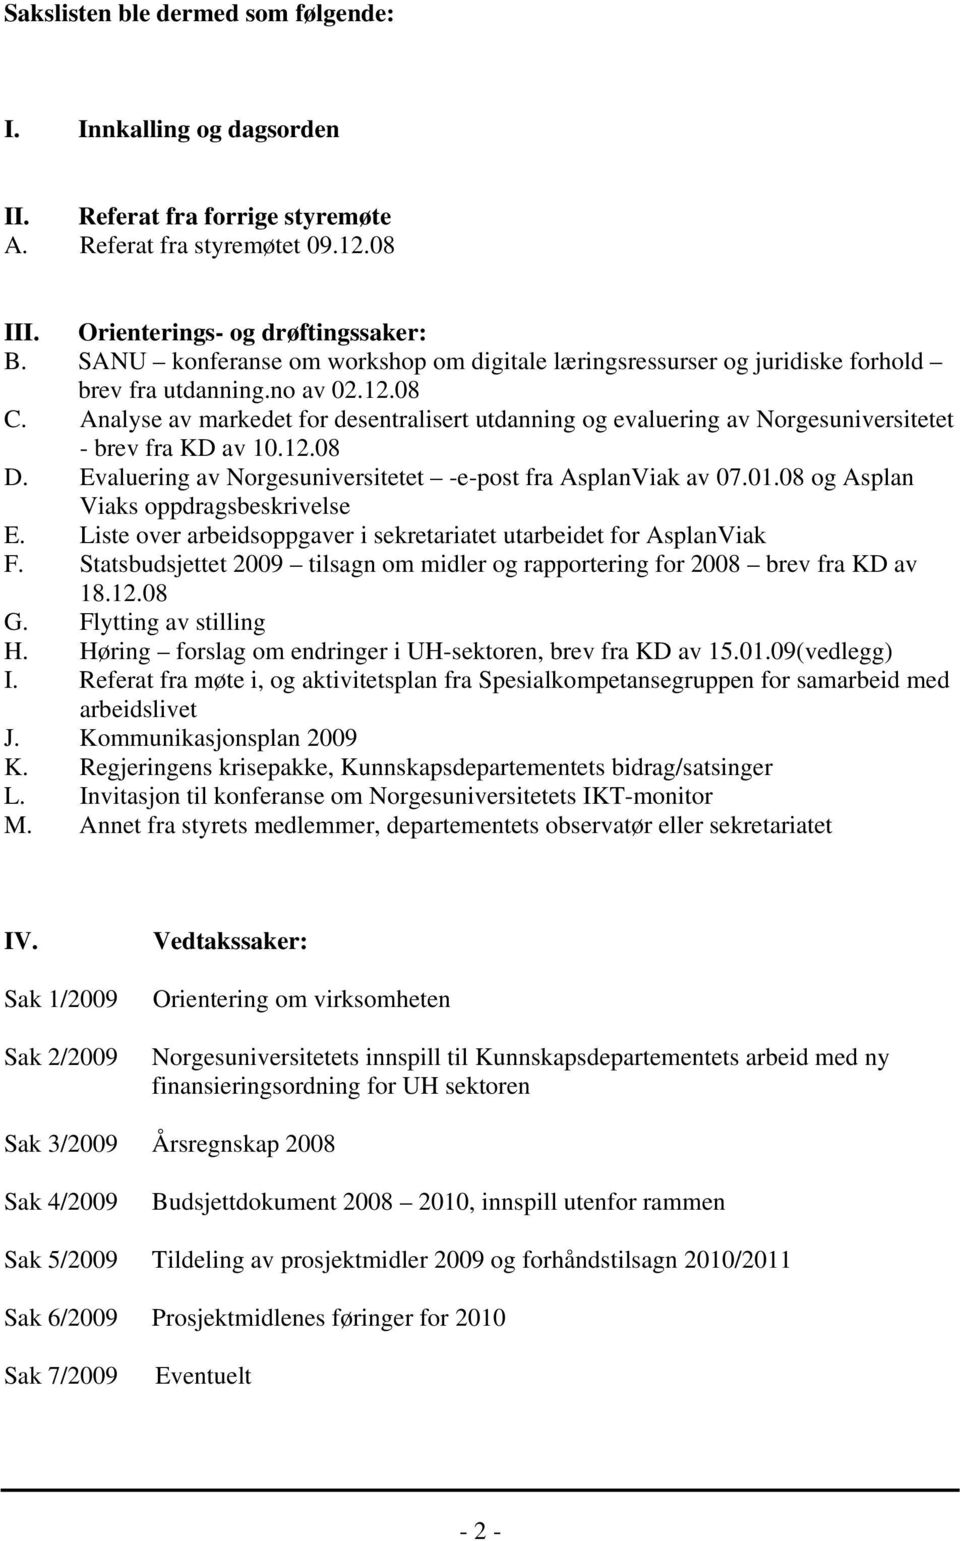 Analyse av markedet for desentralisert utdanning og evaluering av Norgesuniversitetet - brev fra KD av 10.12.08 D. Evaluering av Norgesuniversitetet -e-post fra AsplanViak av 07.01.